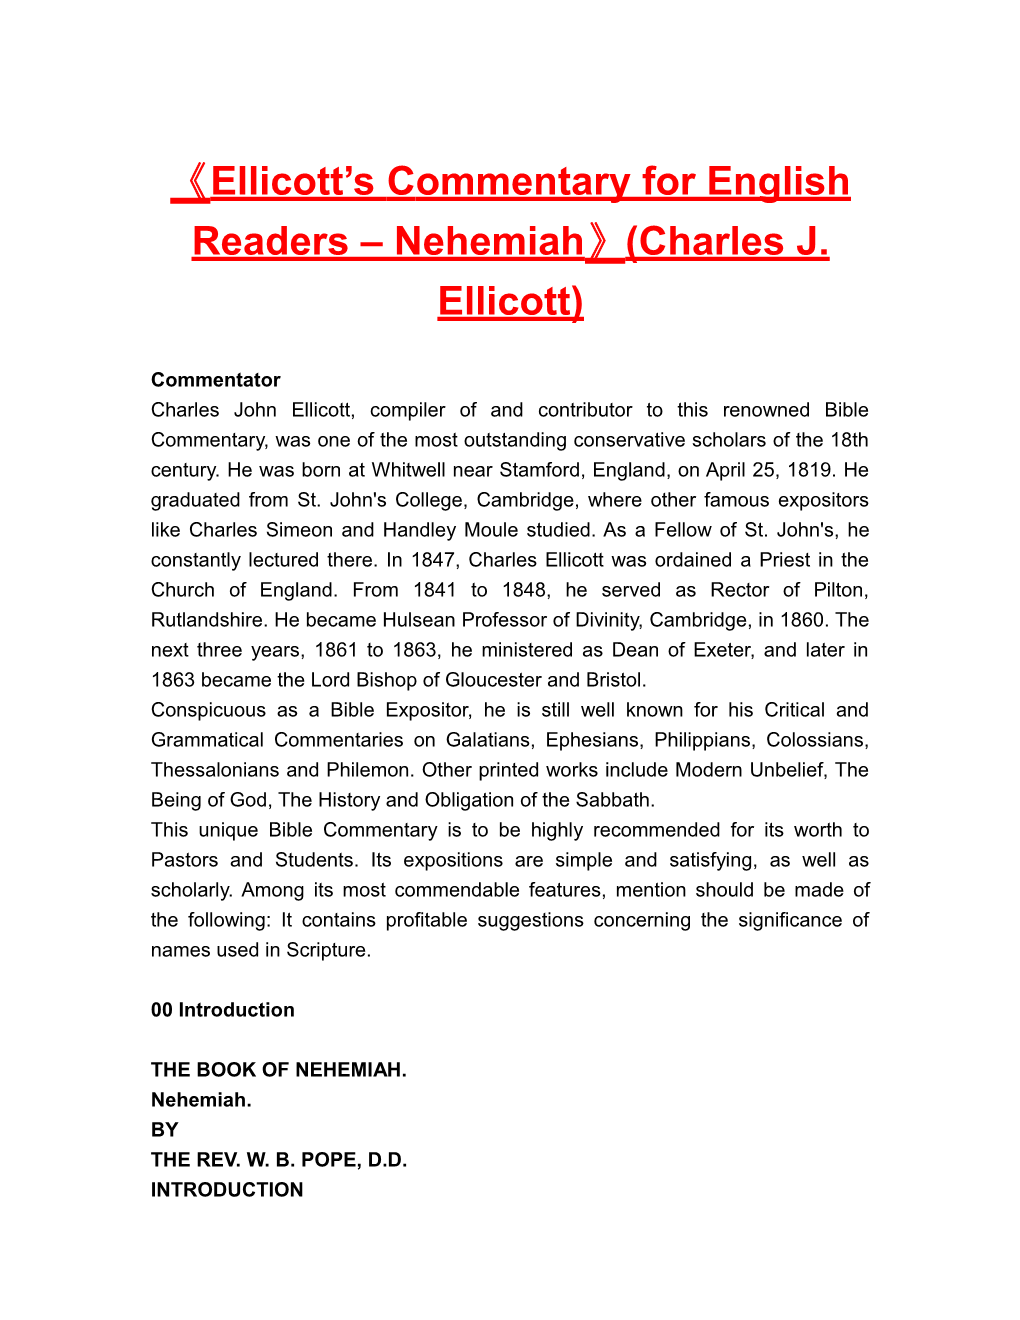 Ellicott Scommentary for English Readers Nehemiah (Charles J. Ellicott)